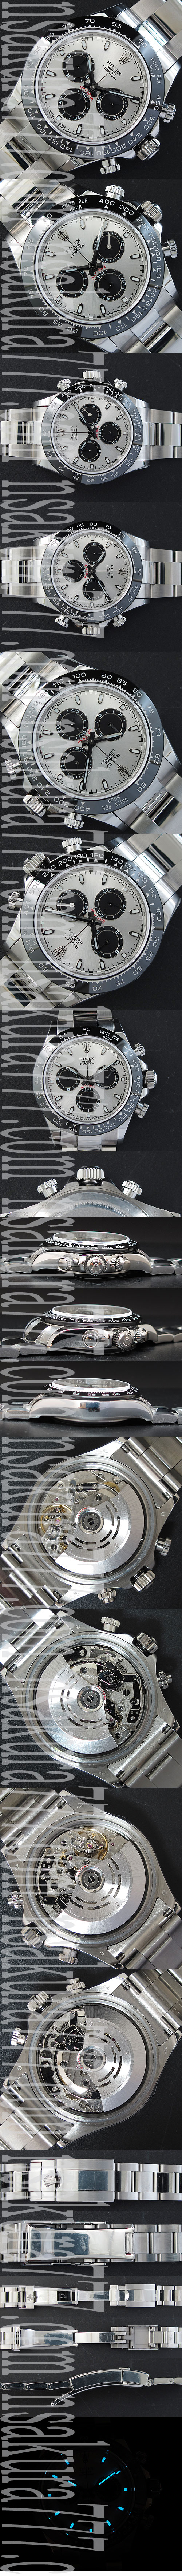 多機能腕時計 ロレックス デイトナコピー時計 Asian7750搭載 28800振動 シルバー クロノグラフ 夜光